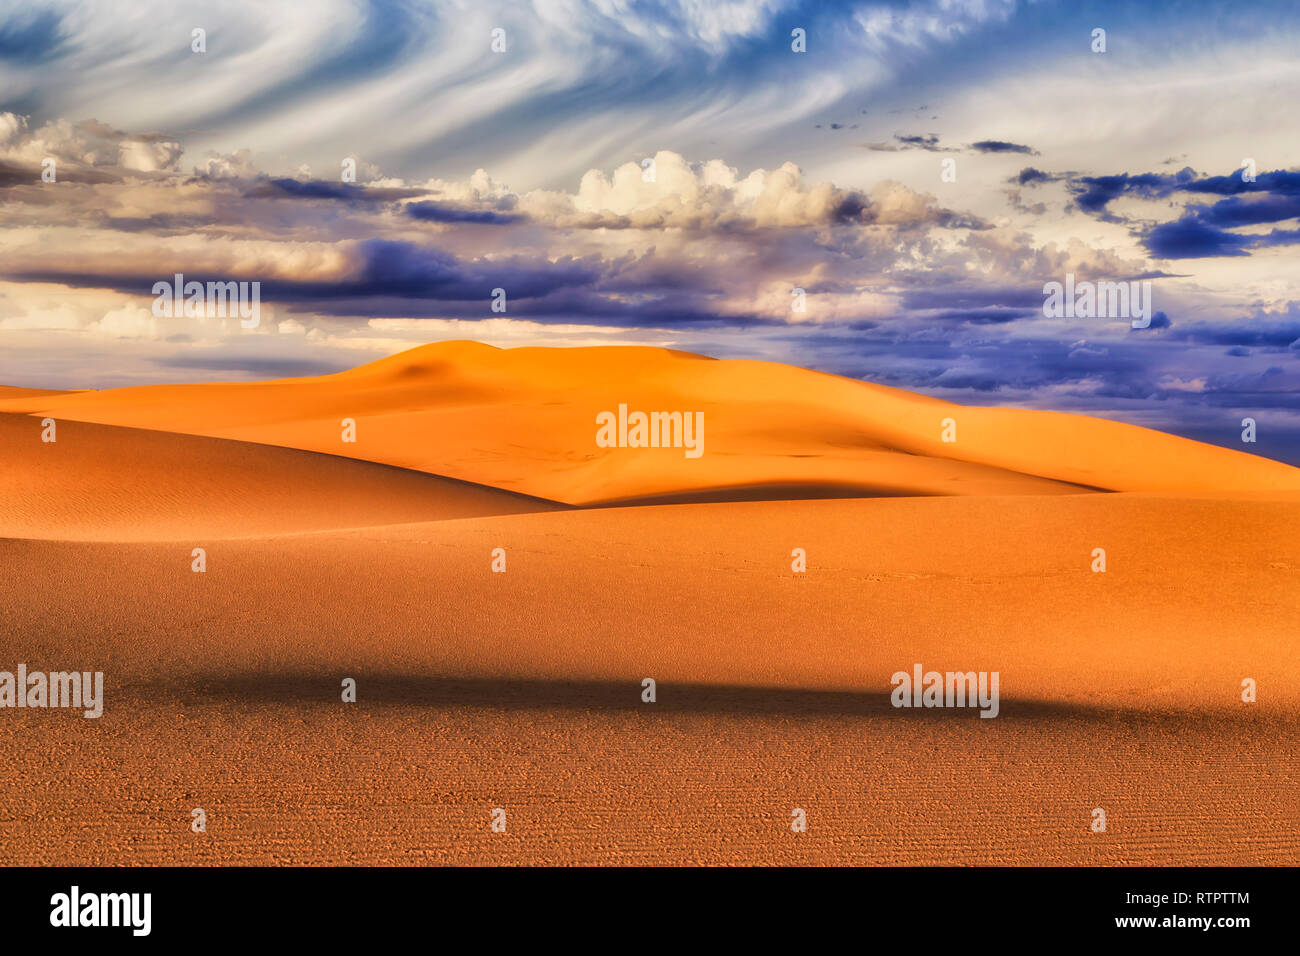 Endlose leblos Sanddünen unter Wolken und blauer Himmel im weichen Abendlicht mit Schattierungen zeichnen Bilder mit Formen aus Sand Massen. Stockfoto